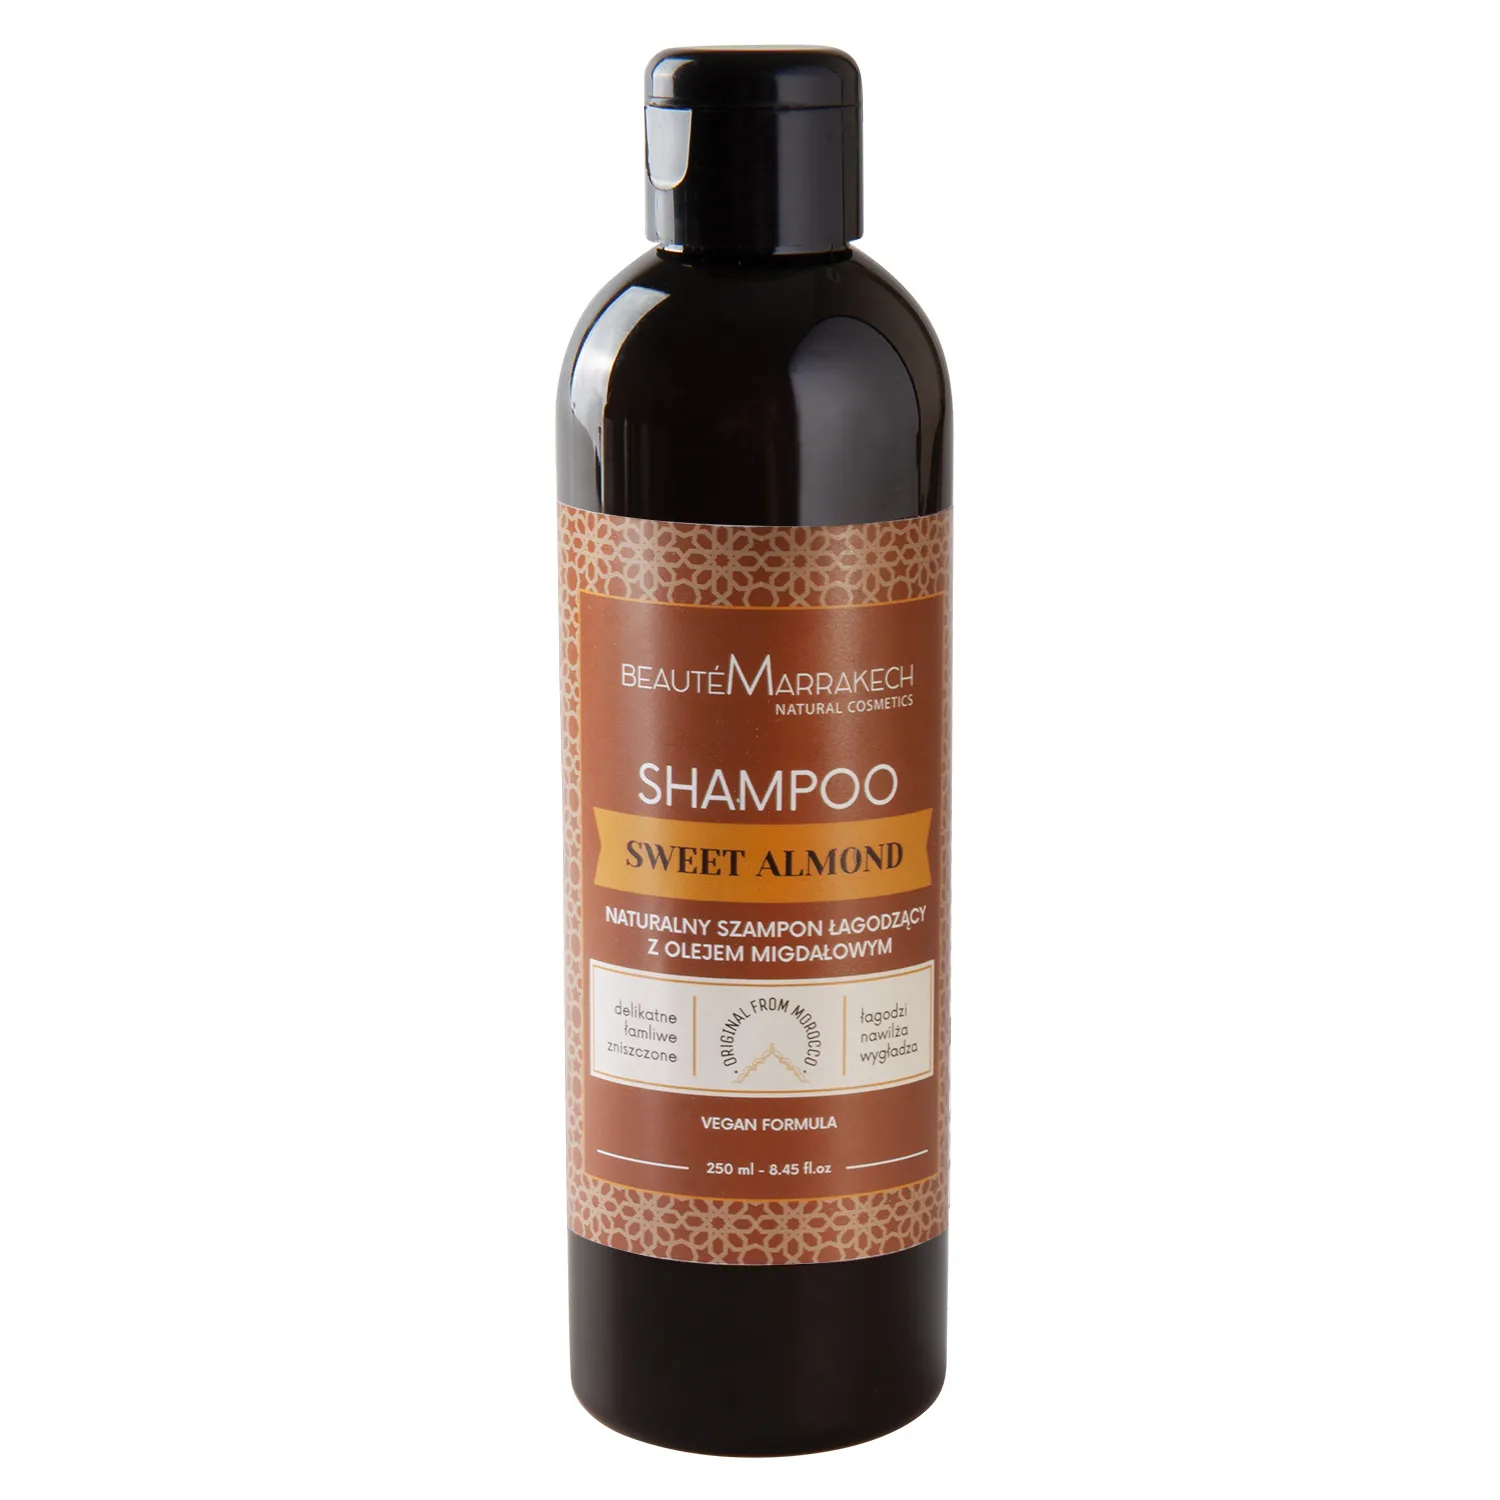 Beaute Marrakech szampon do wrażliwej skóry głowy z olejem ze słodkich migdałów, 250 ml